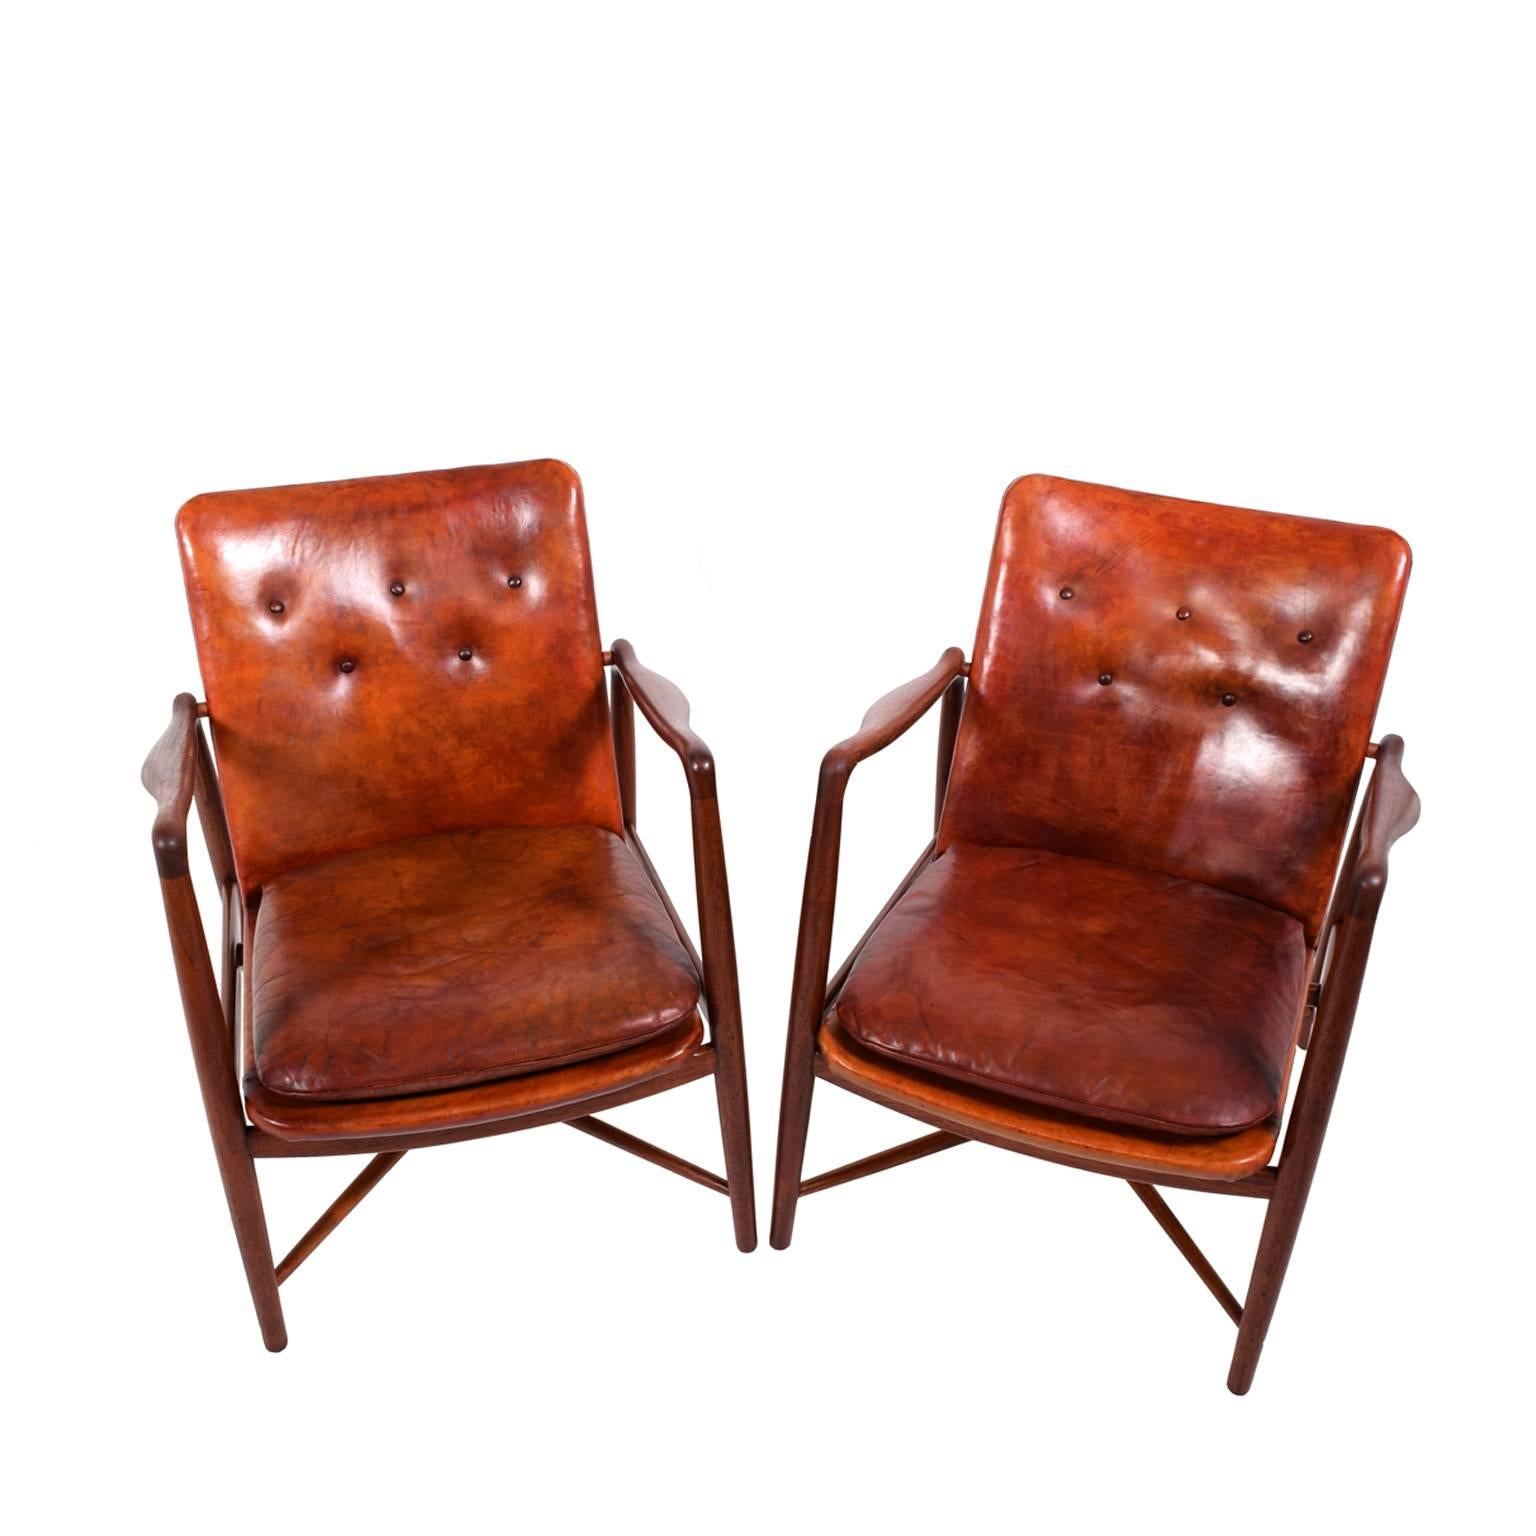 Danish Pair of Finn Juhl Chairs for Bovirke, 1946